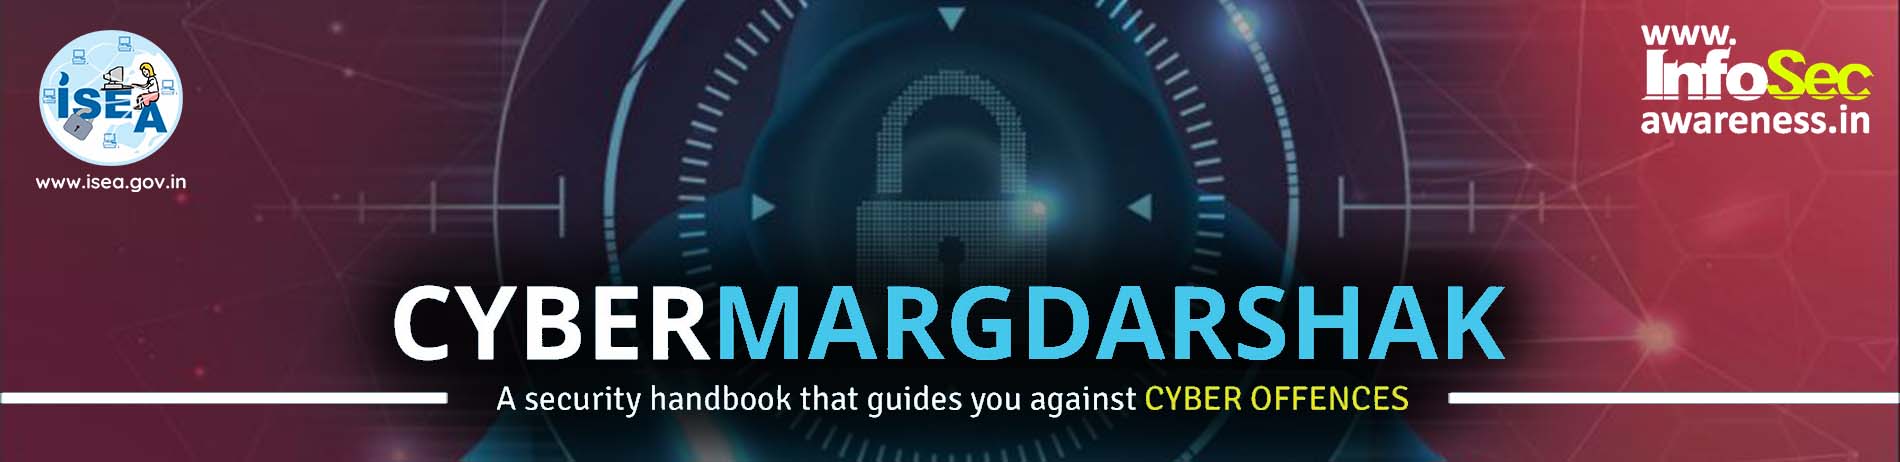 cyber-margdarshak0341